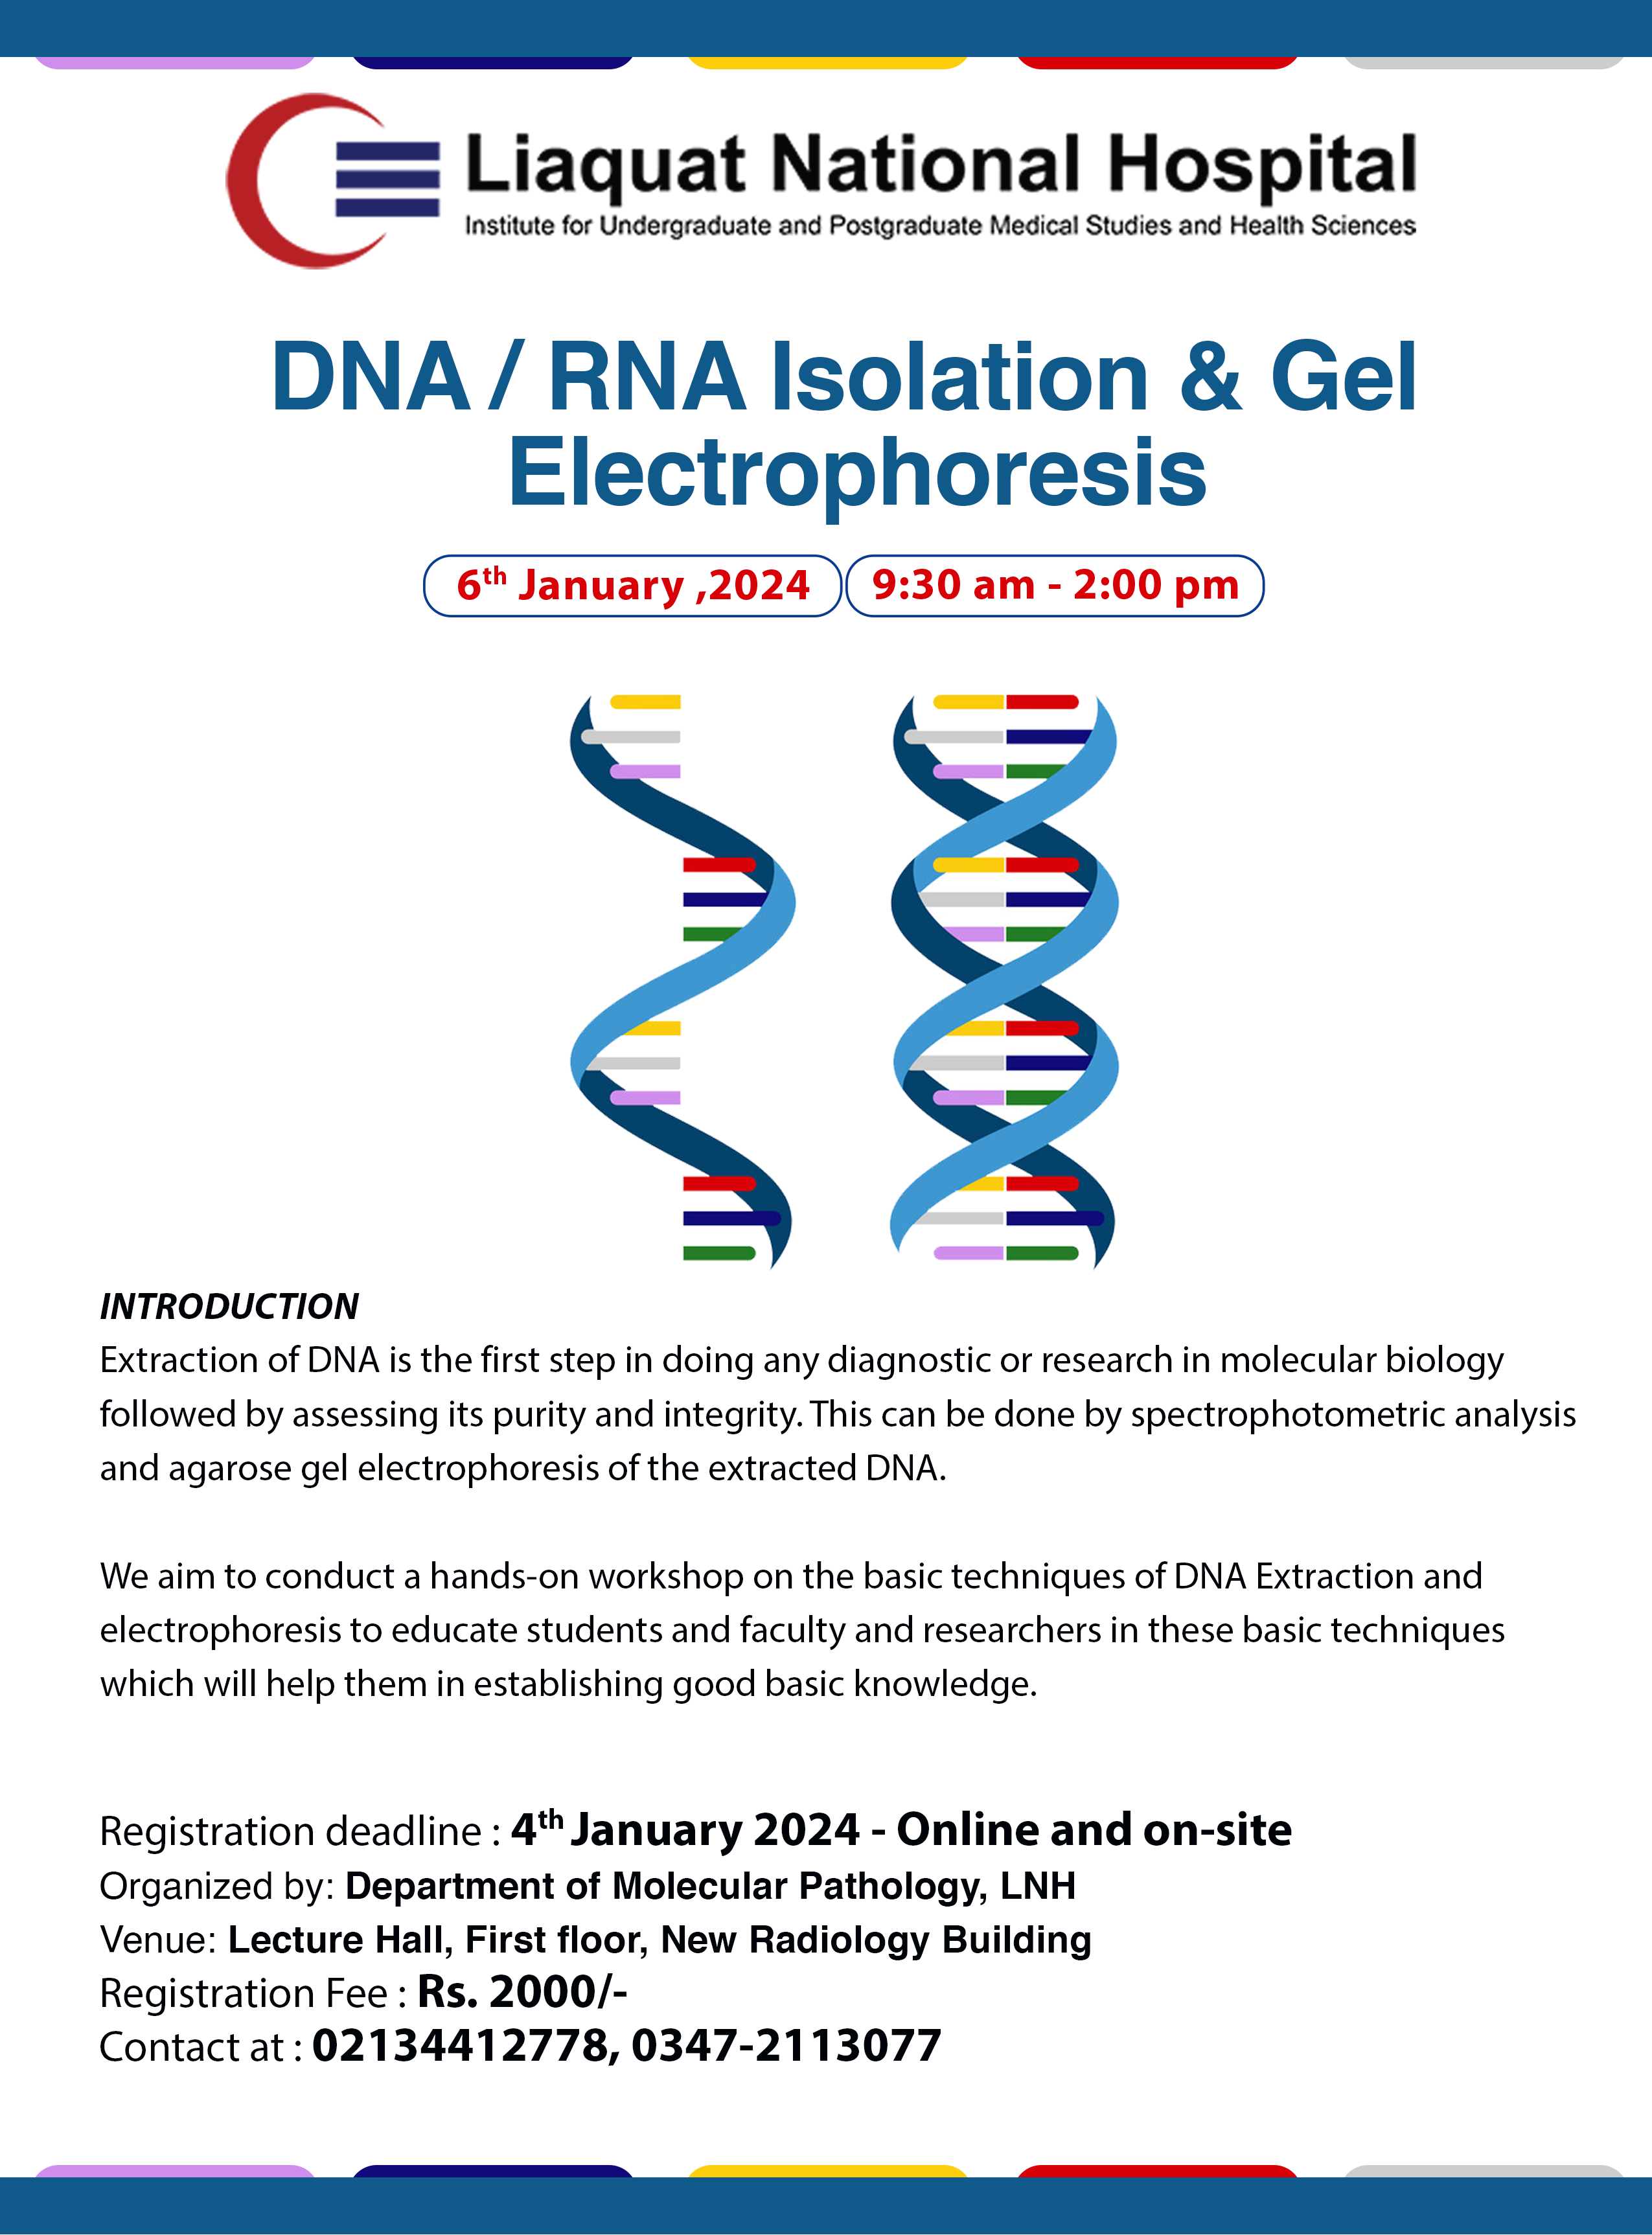 Workshop on DNA/RNA Isolation & Gel Electrophoresis